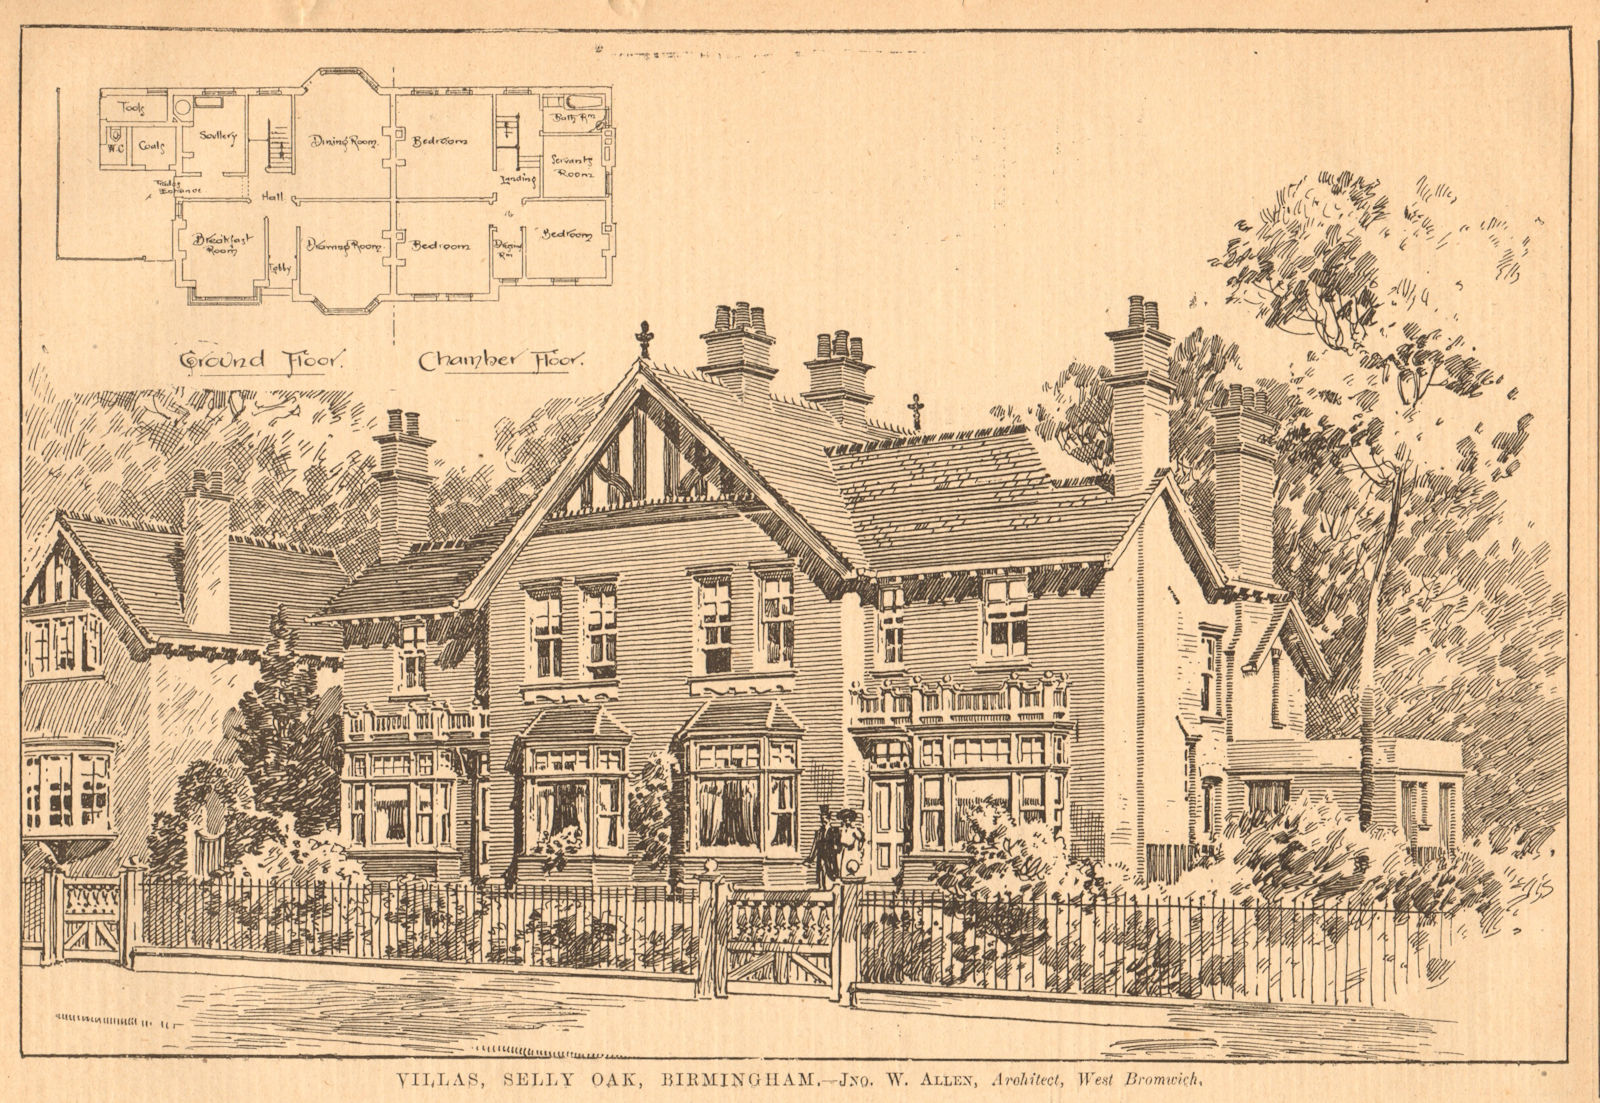 Associate Product Villas, Selly Oak, Birmingham - Jno. W. Allen, Architect, West Bromwich 1903